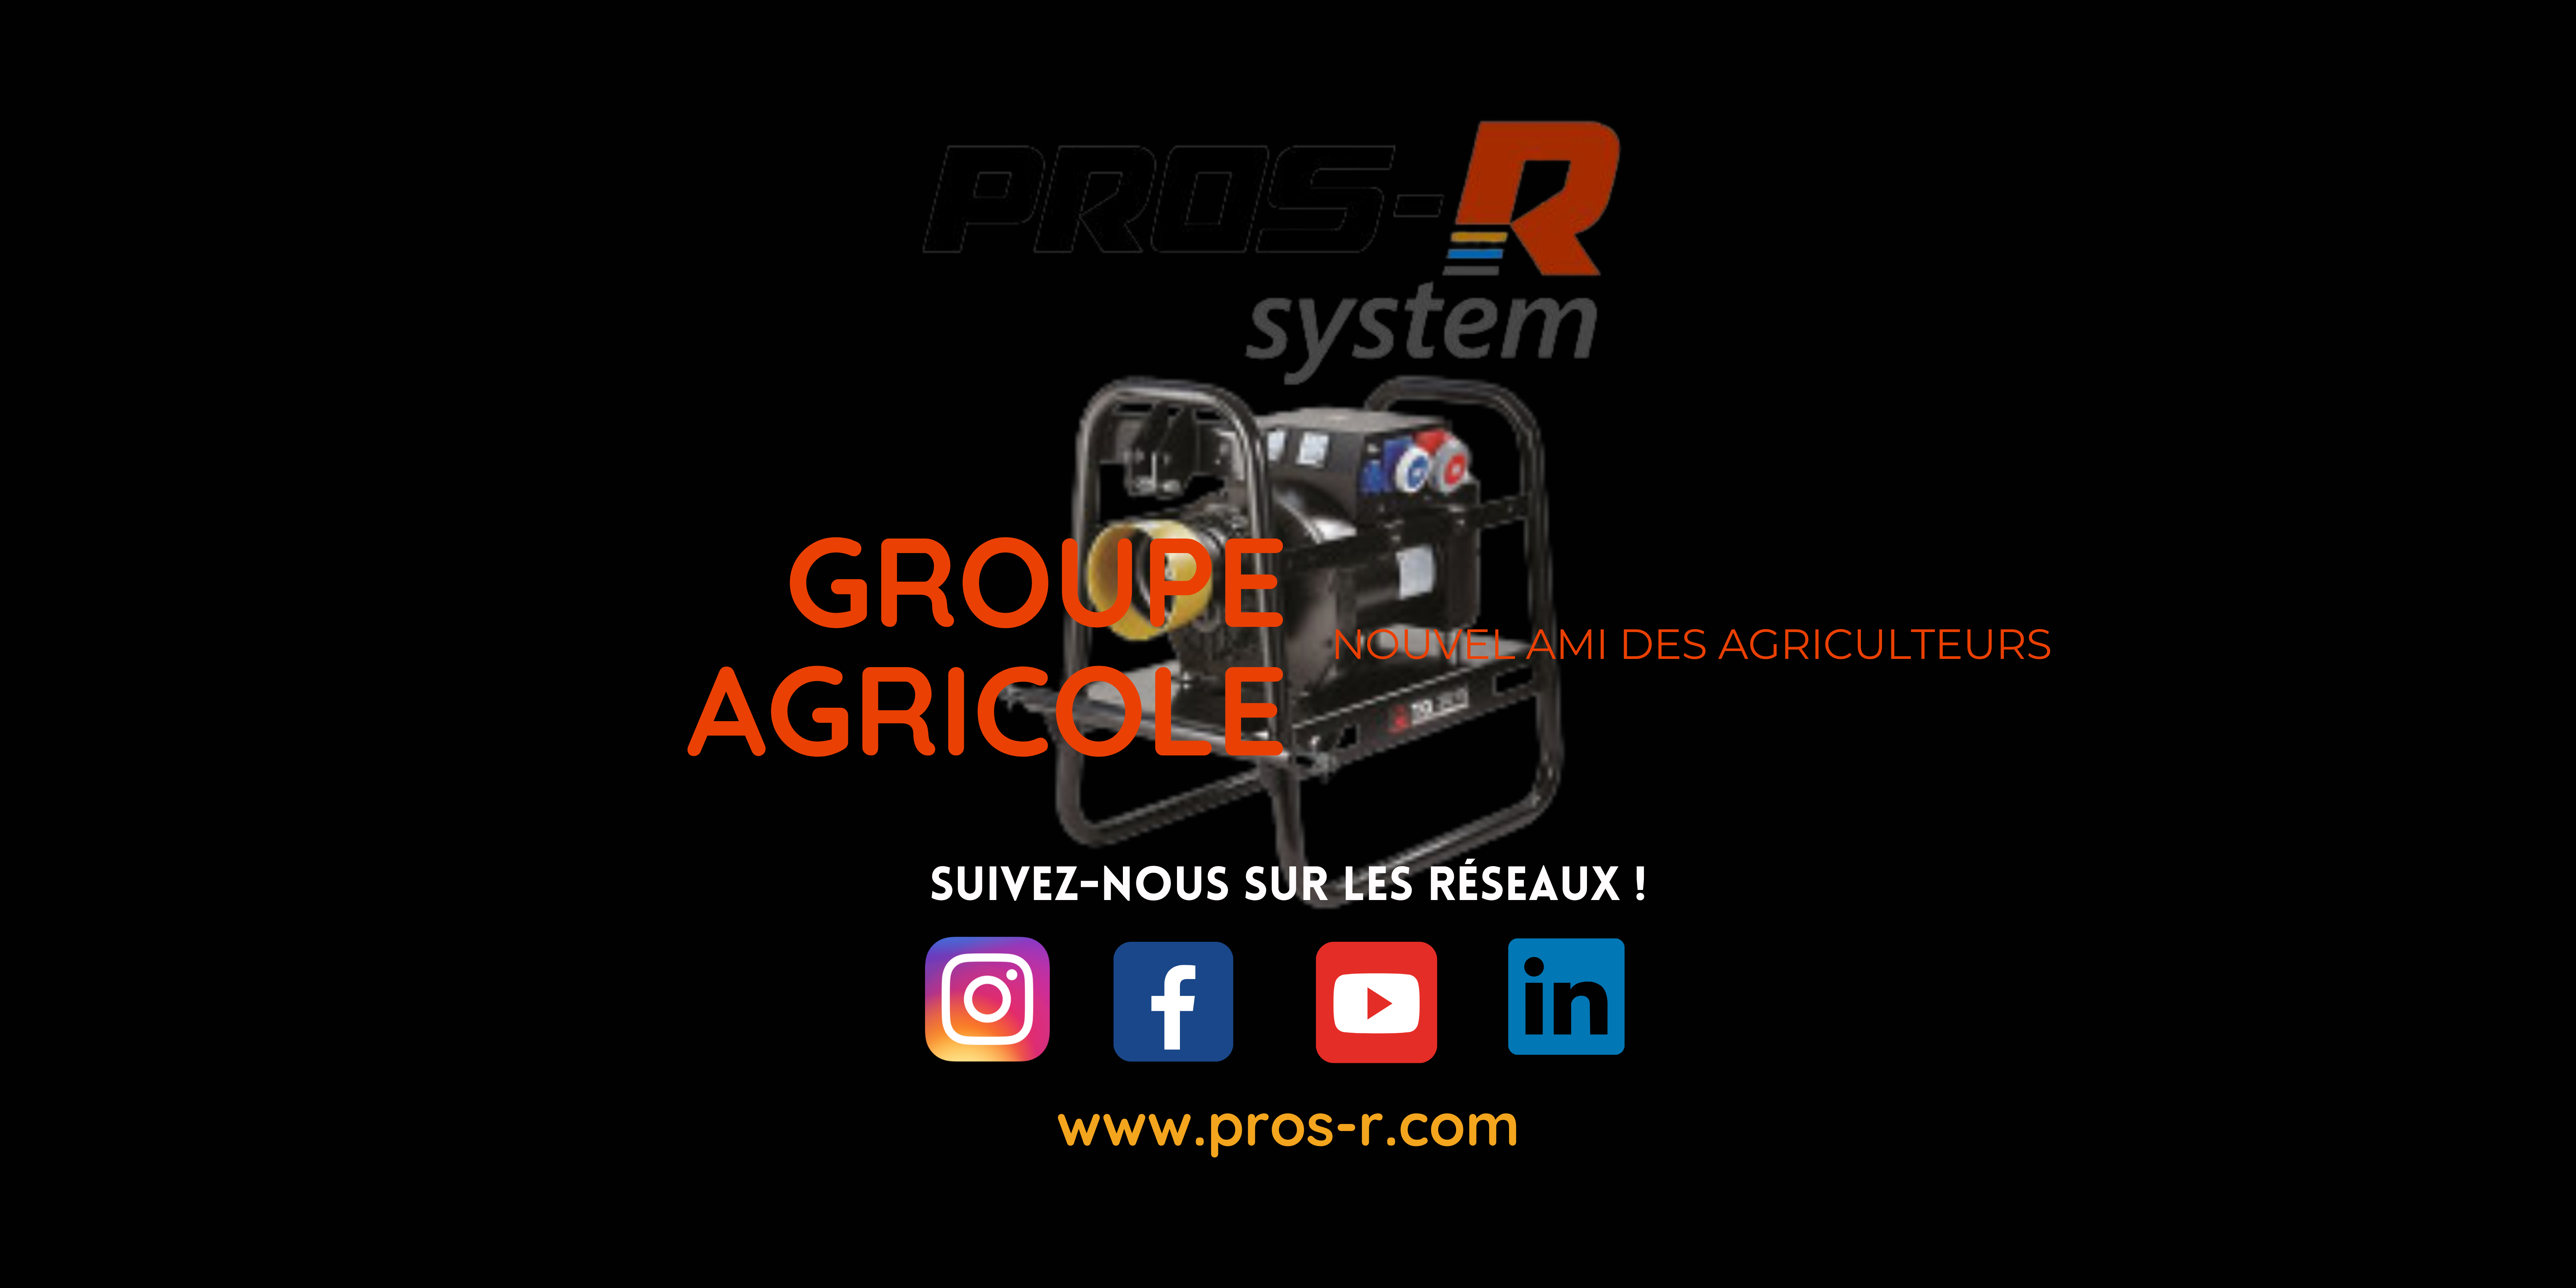 Le groupe agricole nouvel ami des agriculteurs PROS-R System